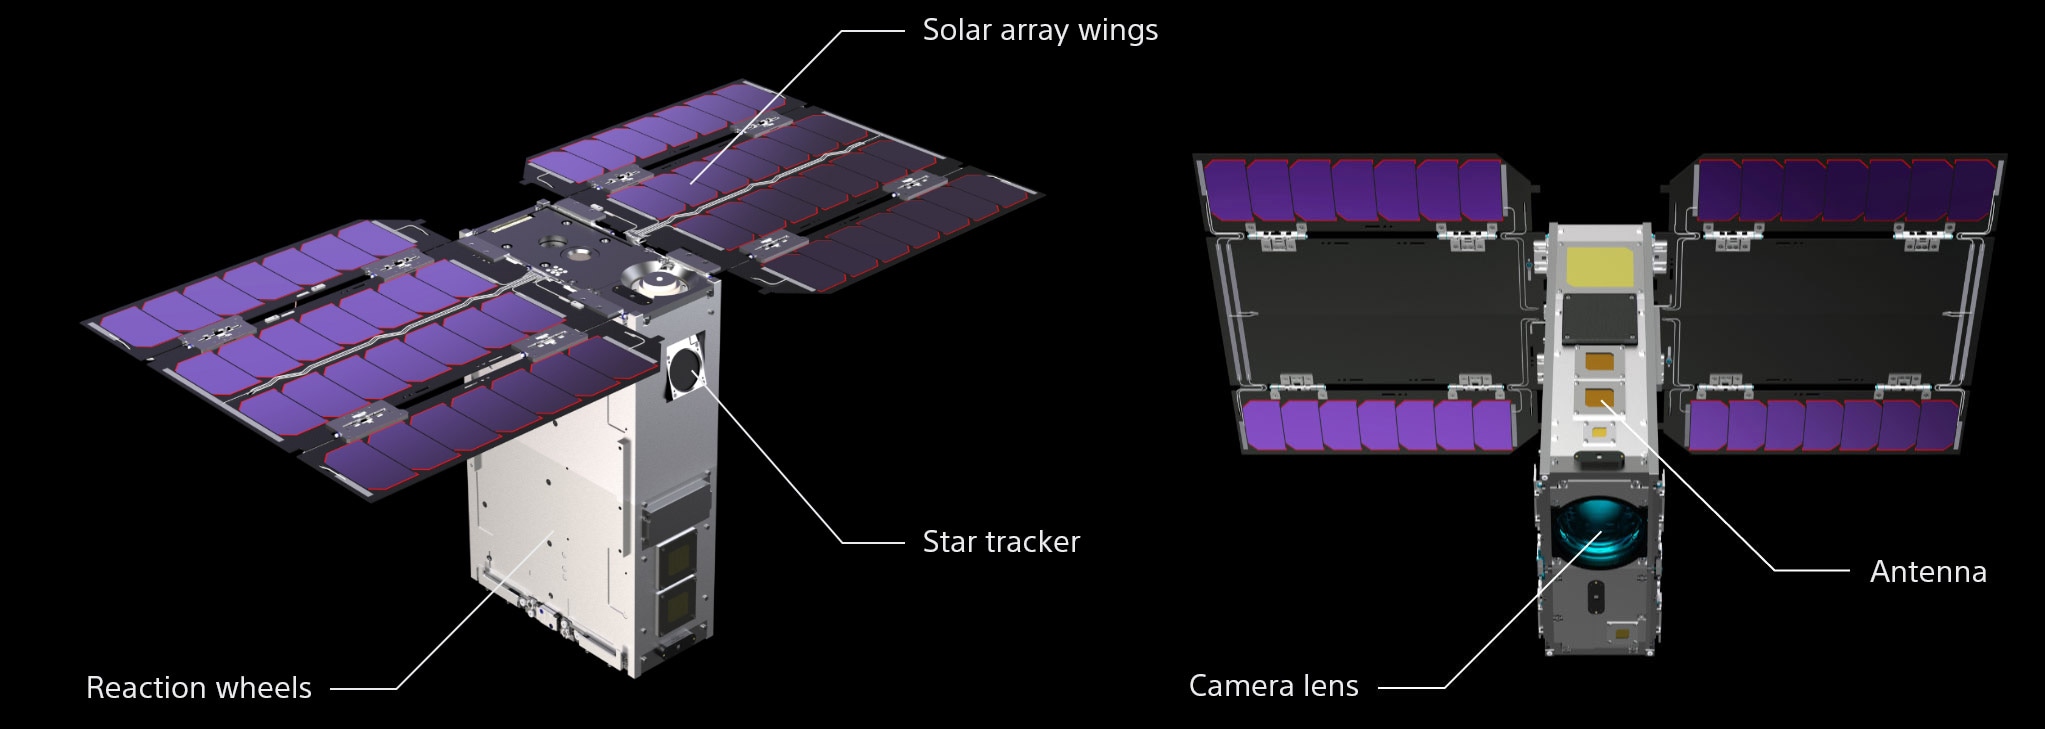 В 2022 году Sony в рамках проекта Star Sphere выведет на орбиту полнокадровую камеру